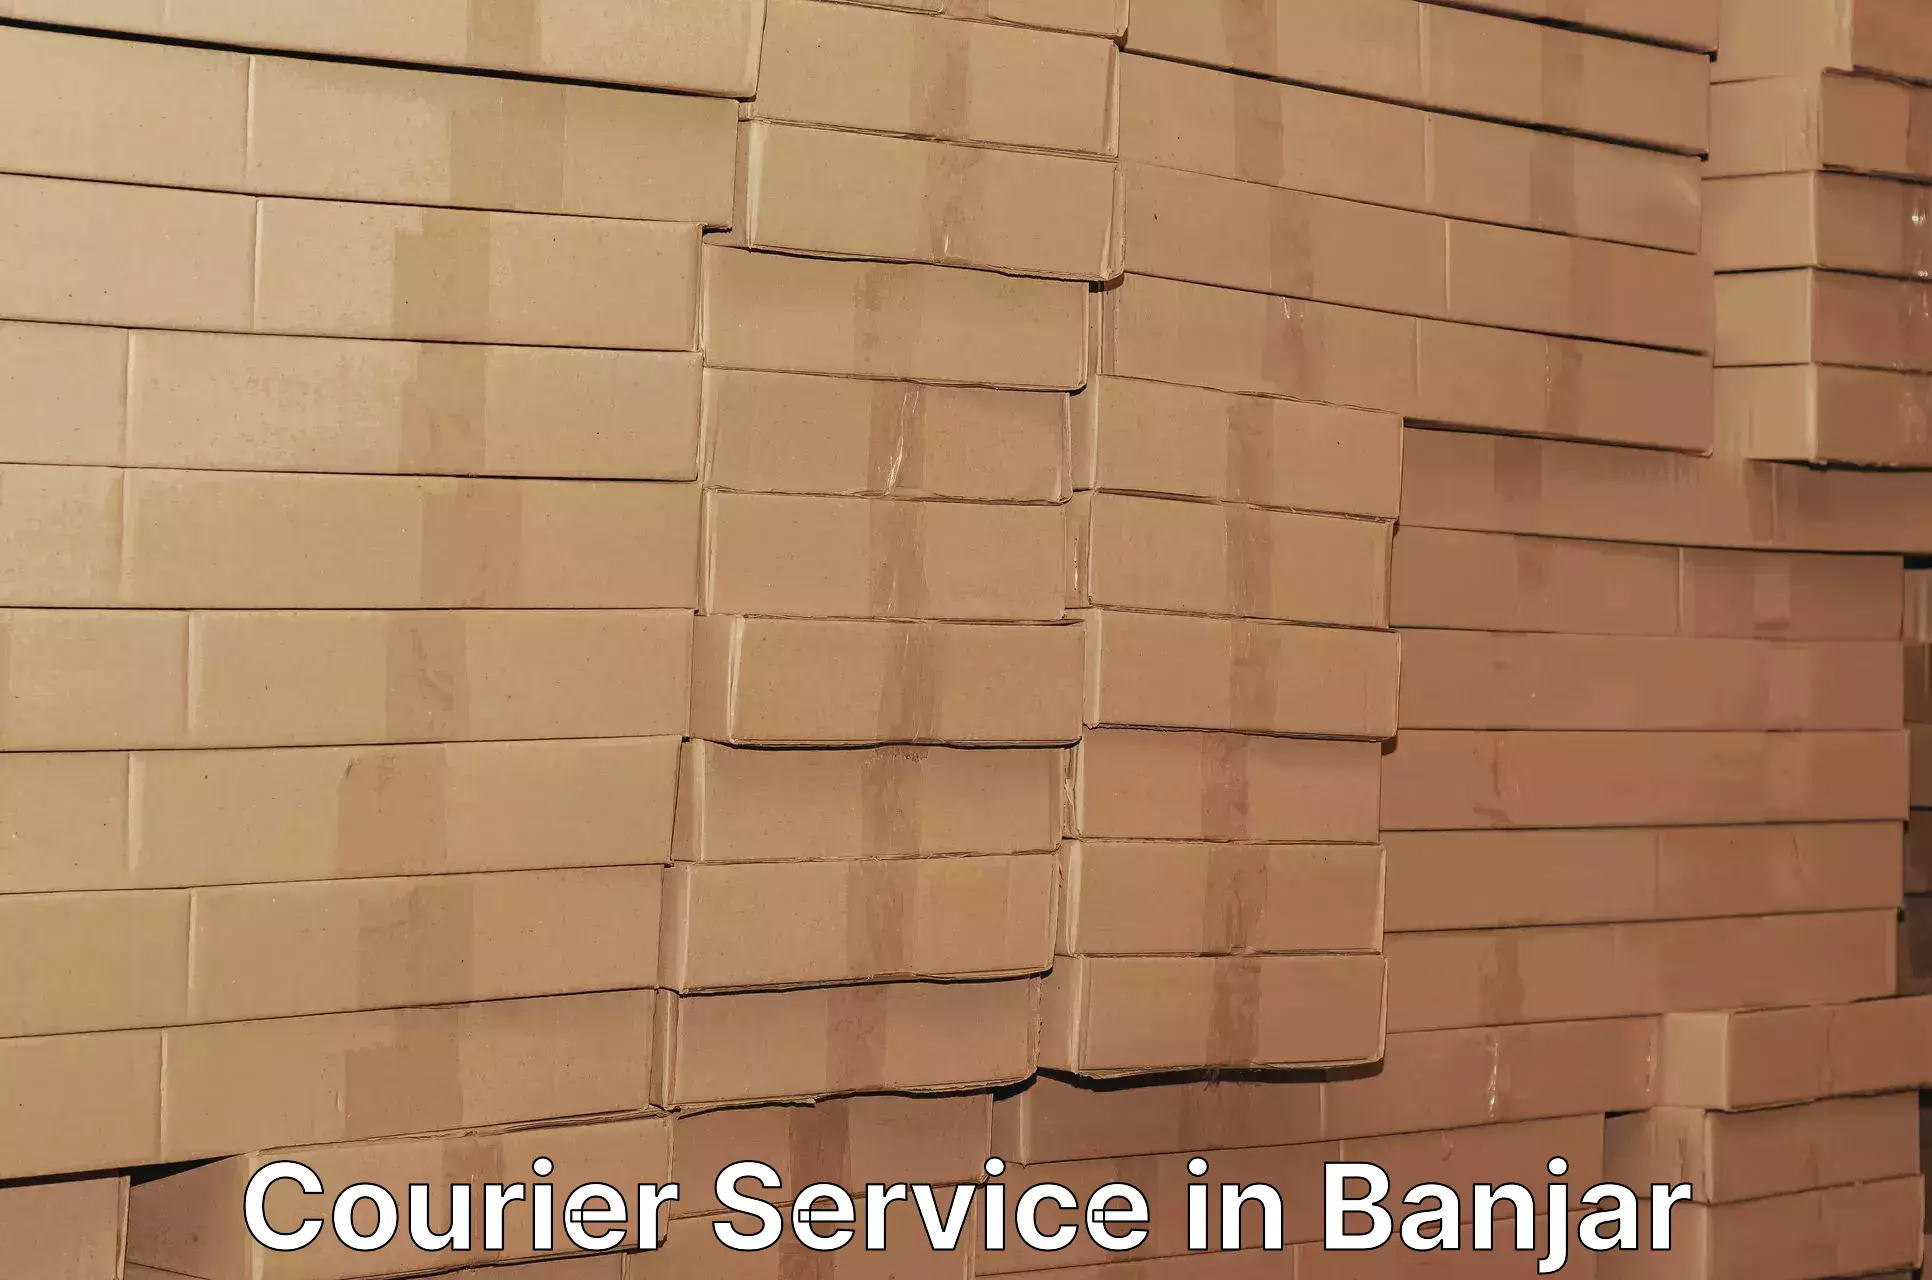 Comprehensive logistics solutions in Banjar